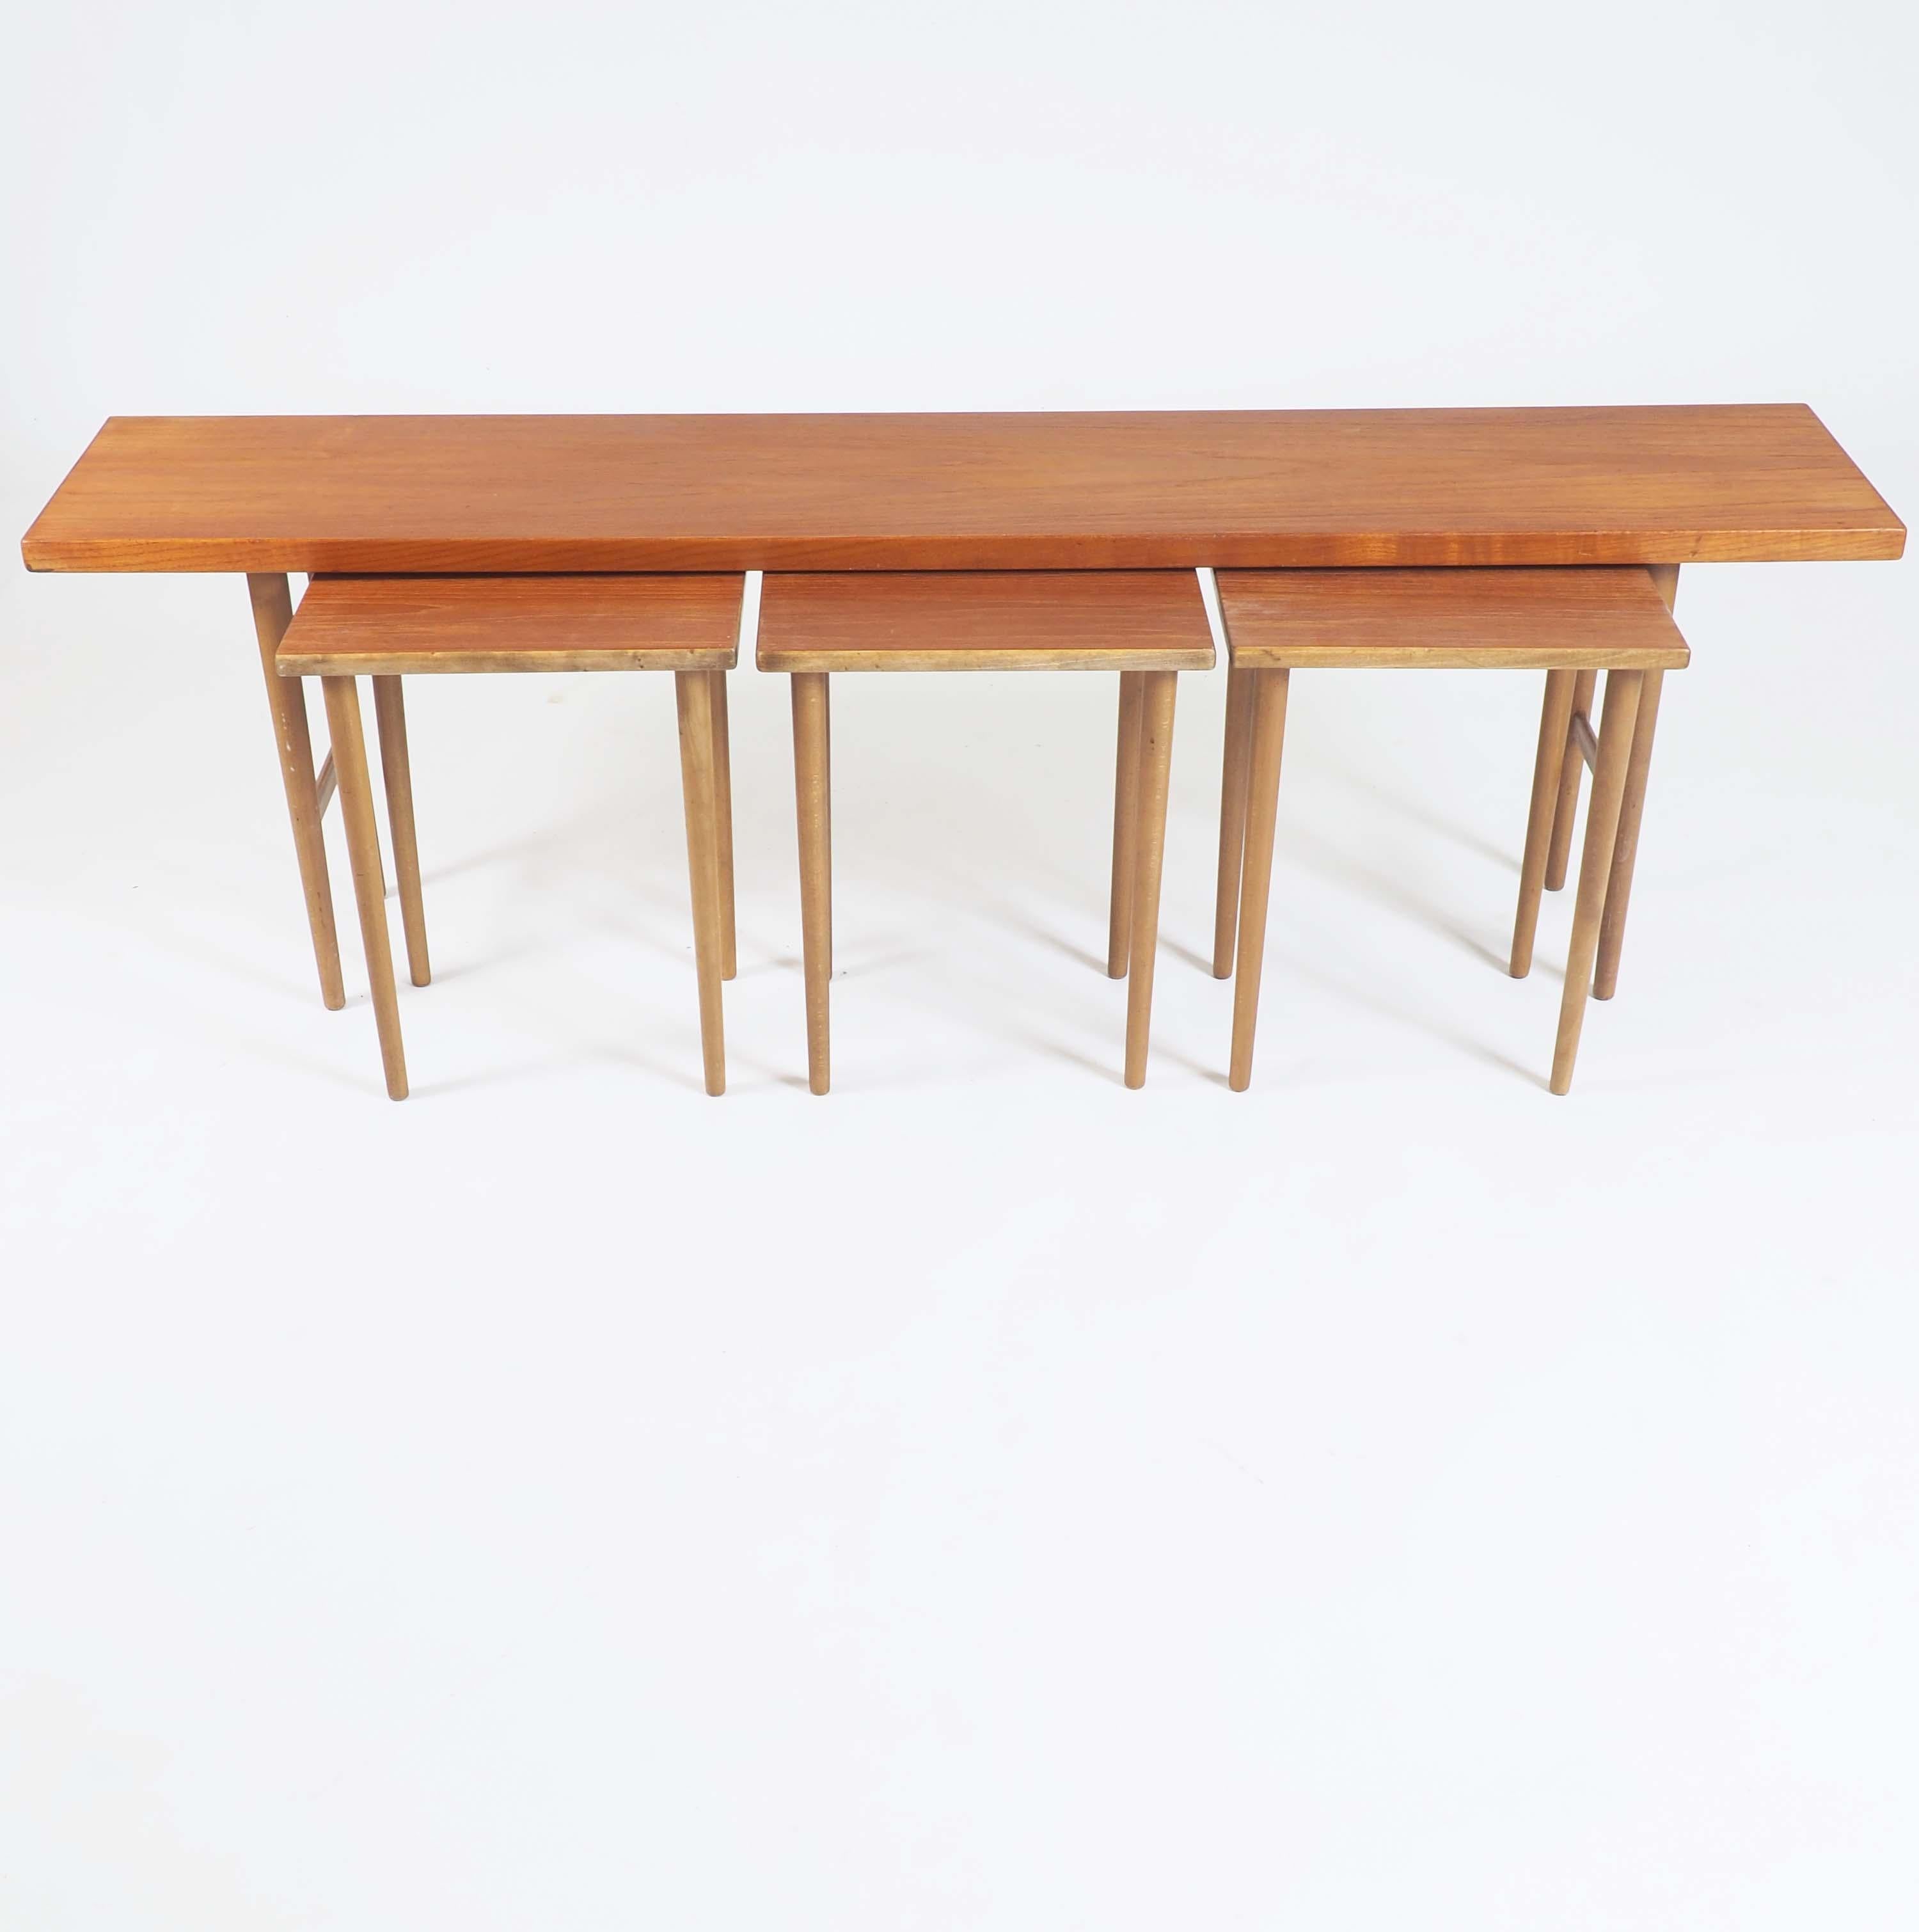 Ces tables gigognes ont été conçues par Kurt Østervig en 1956 et produites par Jason Møbler à Ringsted, au Danemark. Le modèle s'appelle le modèle 200 et il est fabriqué en teck avec des pieds en bois de hêtre.
Ils peuvent être utilisés de